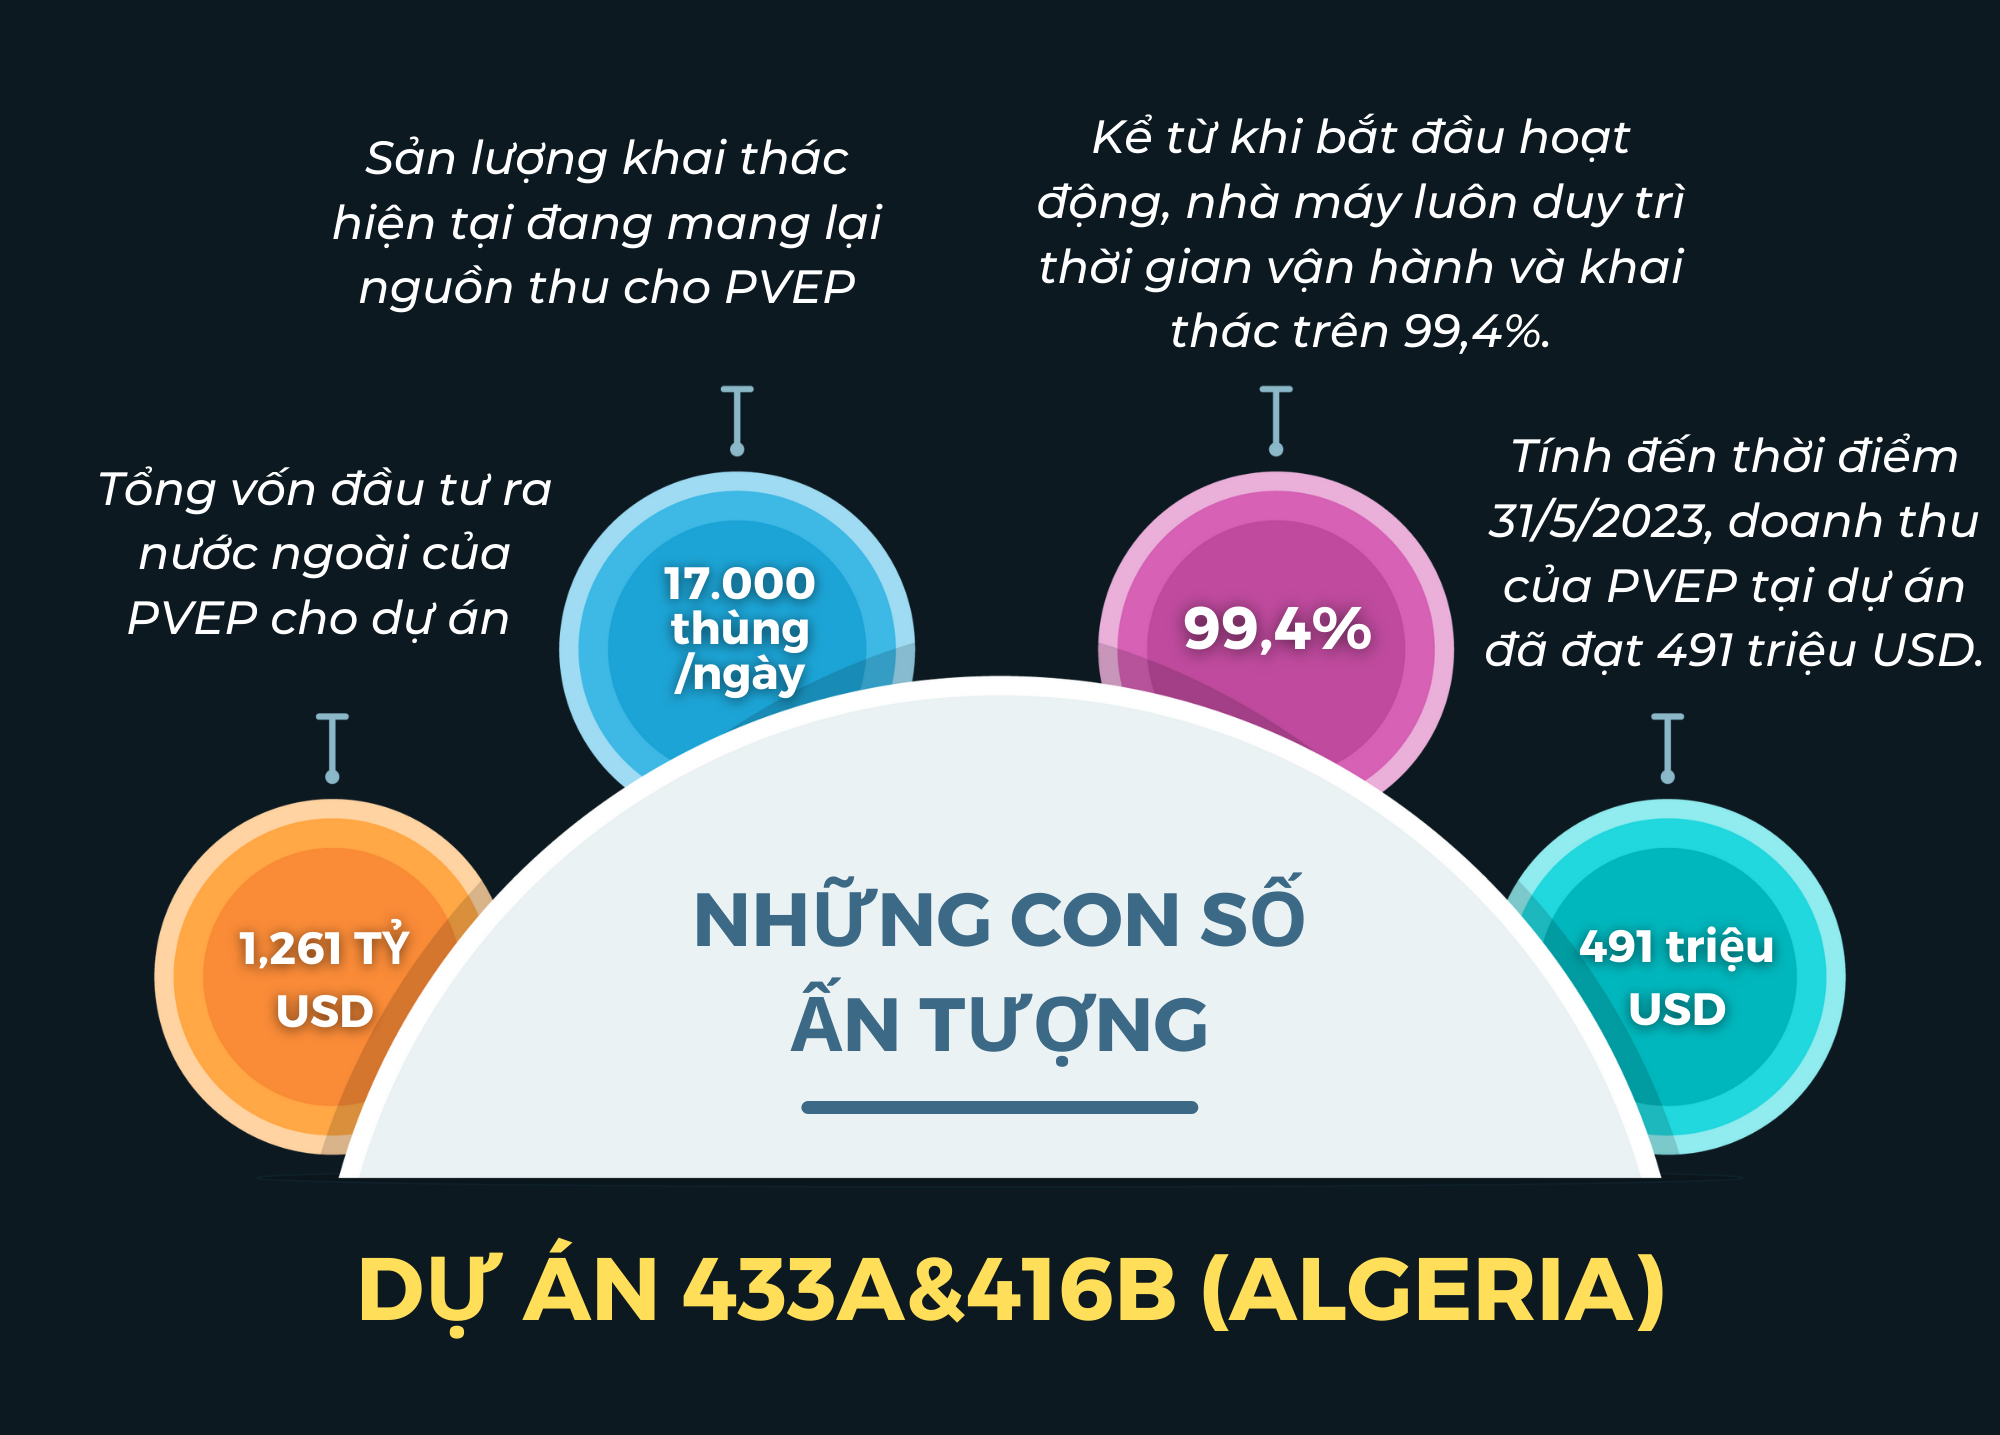 [Infographic] Những dấu mốc phát triển và con số ấn tượng của Dự án 433a&416b (Algeria)